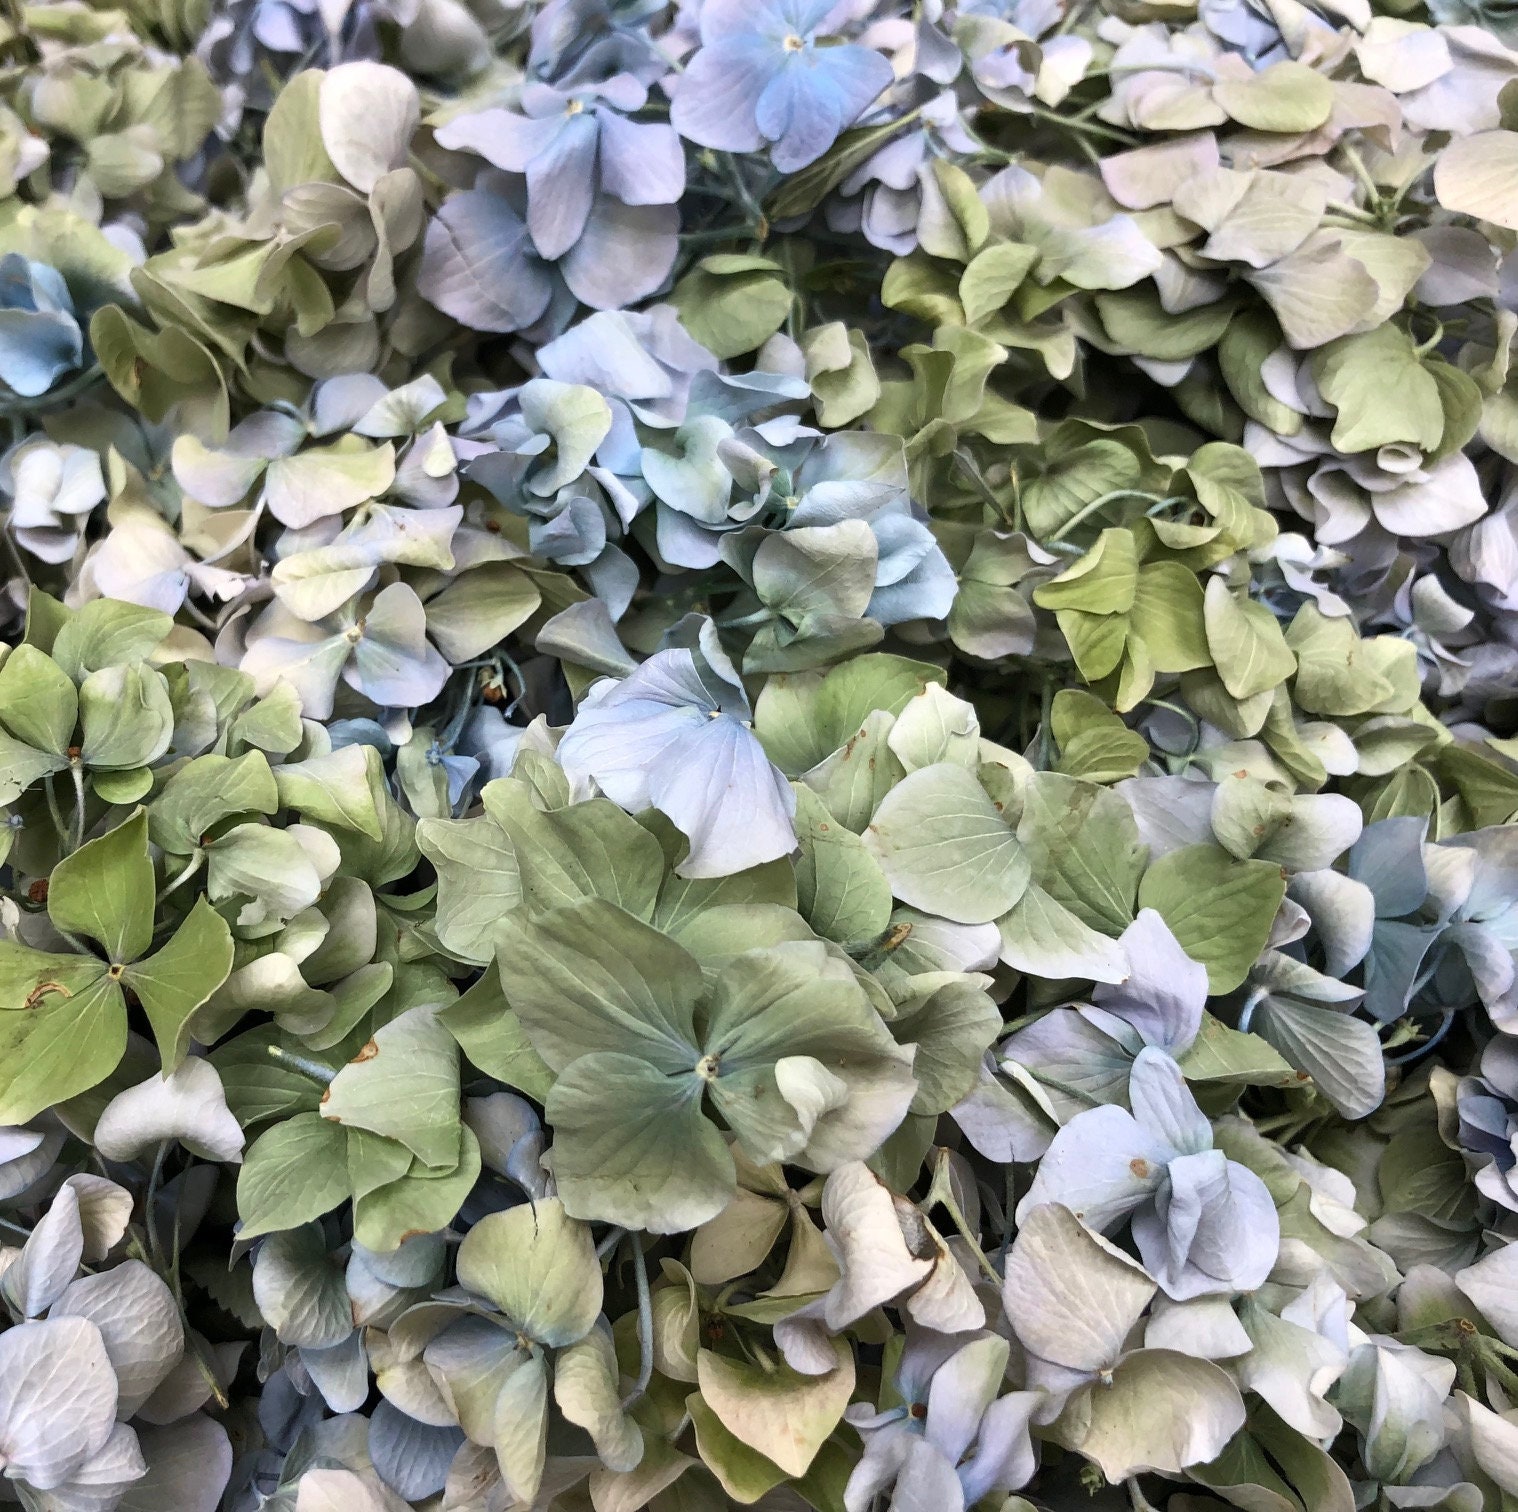 Dried Two-toned Blue Hydrangea Flower, Flower Moxie